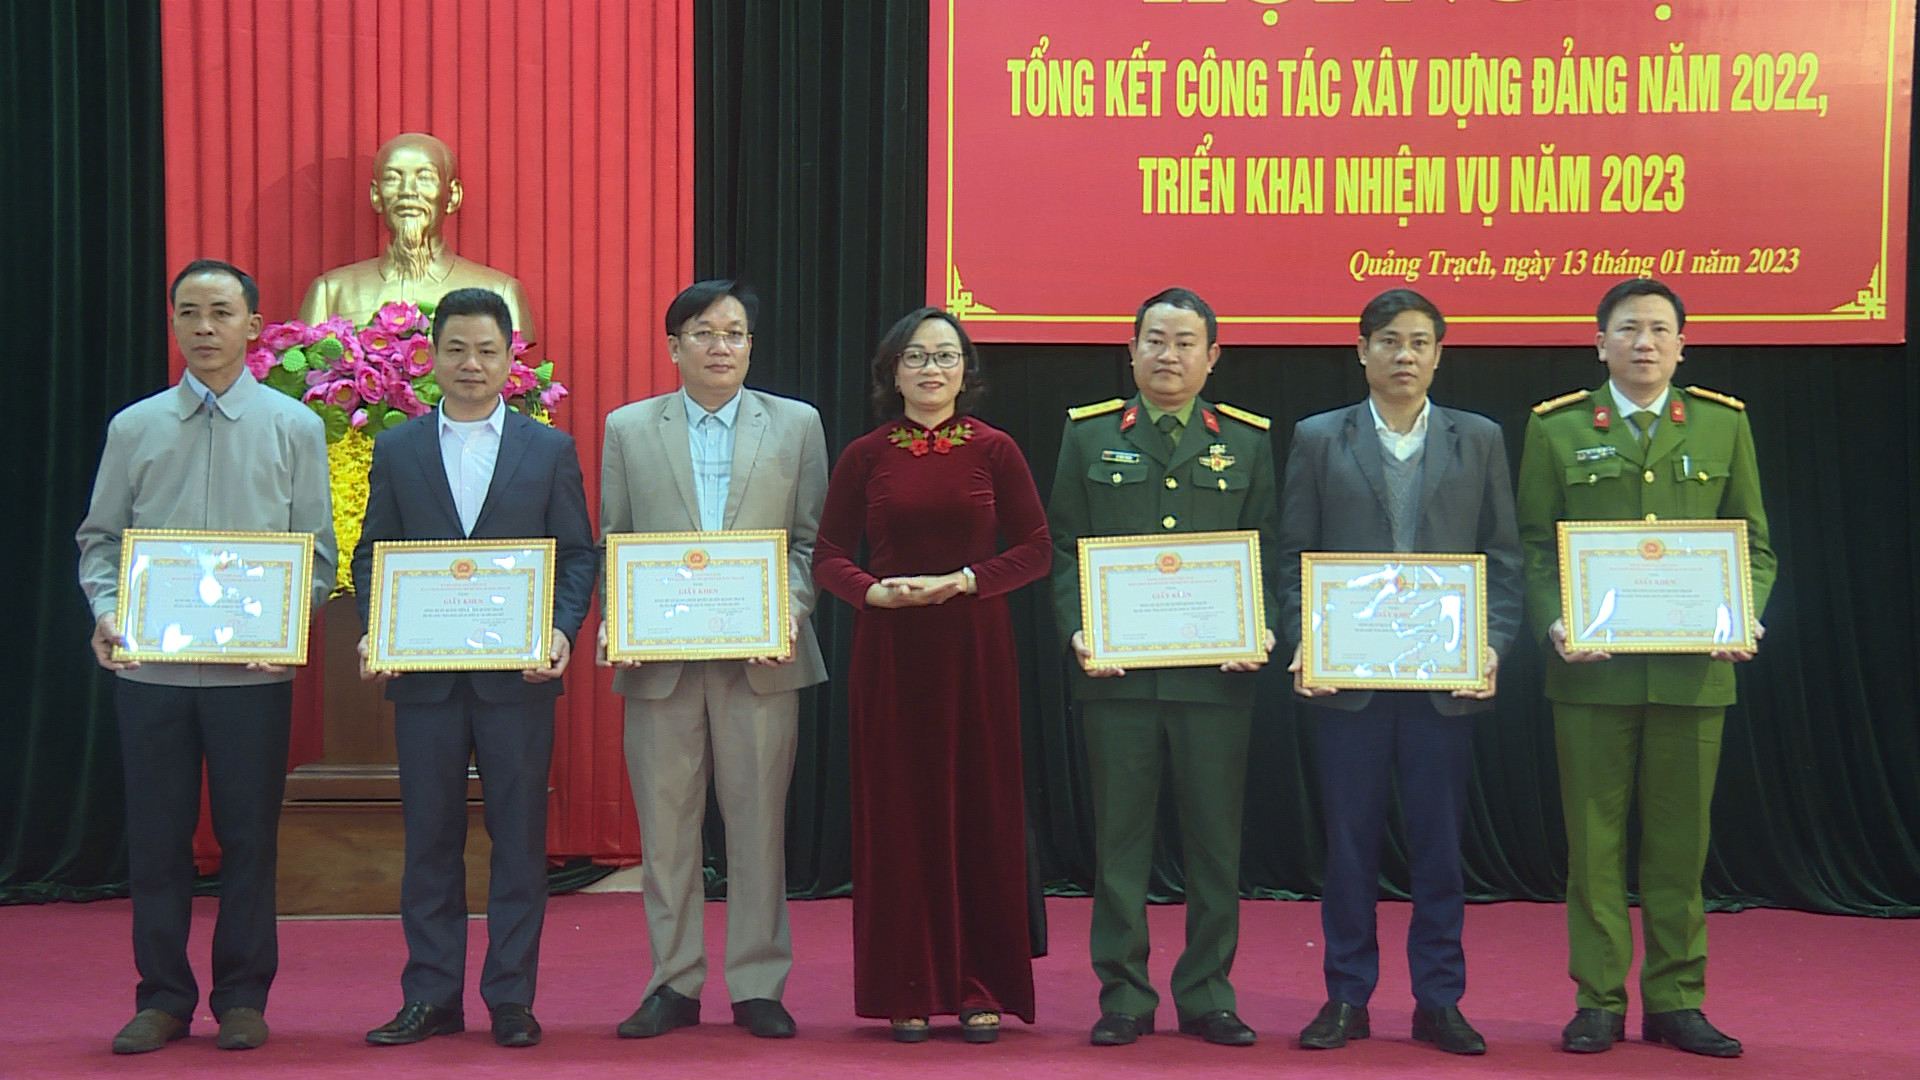 Đồng chí Vũ Thị Mai, Phó Bí thư Thường trực Huyện ủy Quảng Trạch trao giấy khen cho các tập thể xuất sắc.